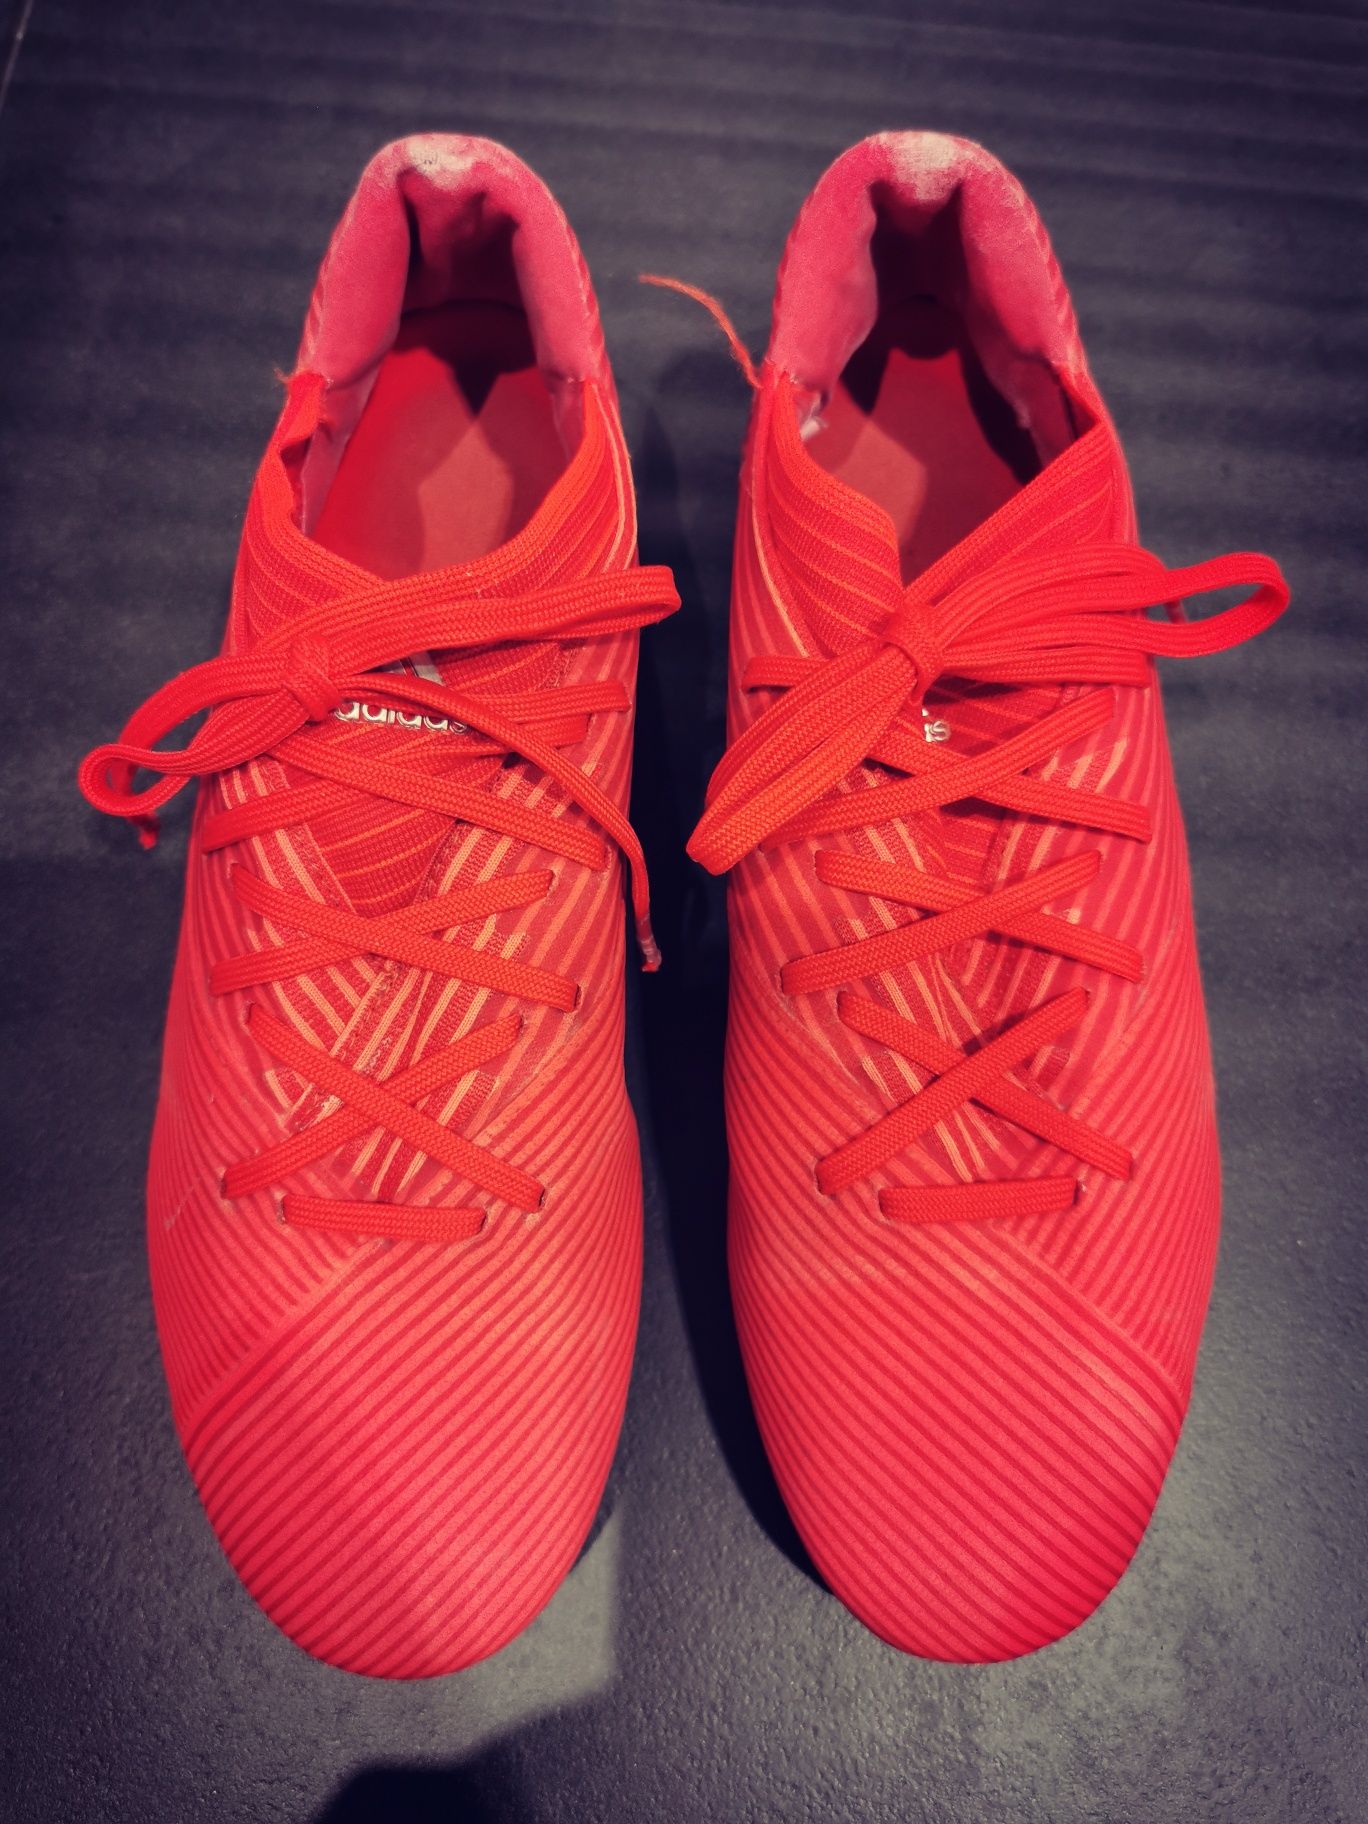 Półprofesjonalne buty piłkarskie Adidas Nemaziz 19.2 rozm. 42